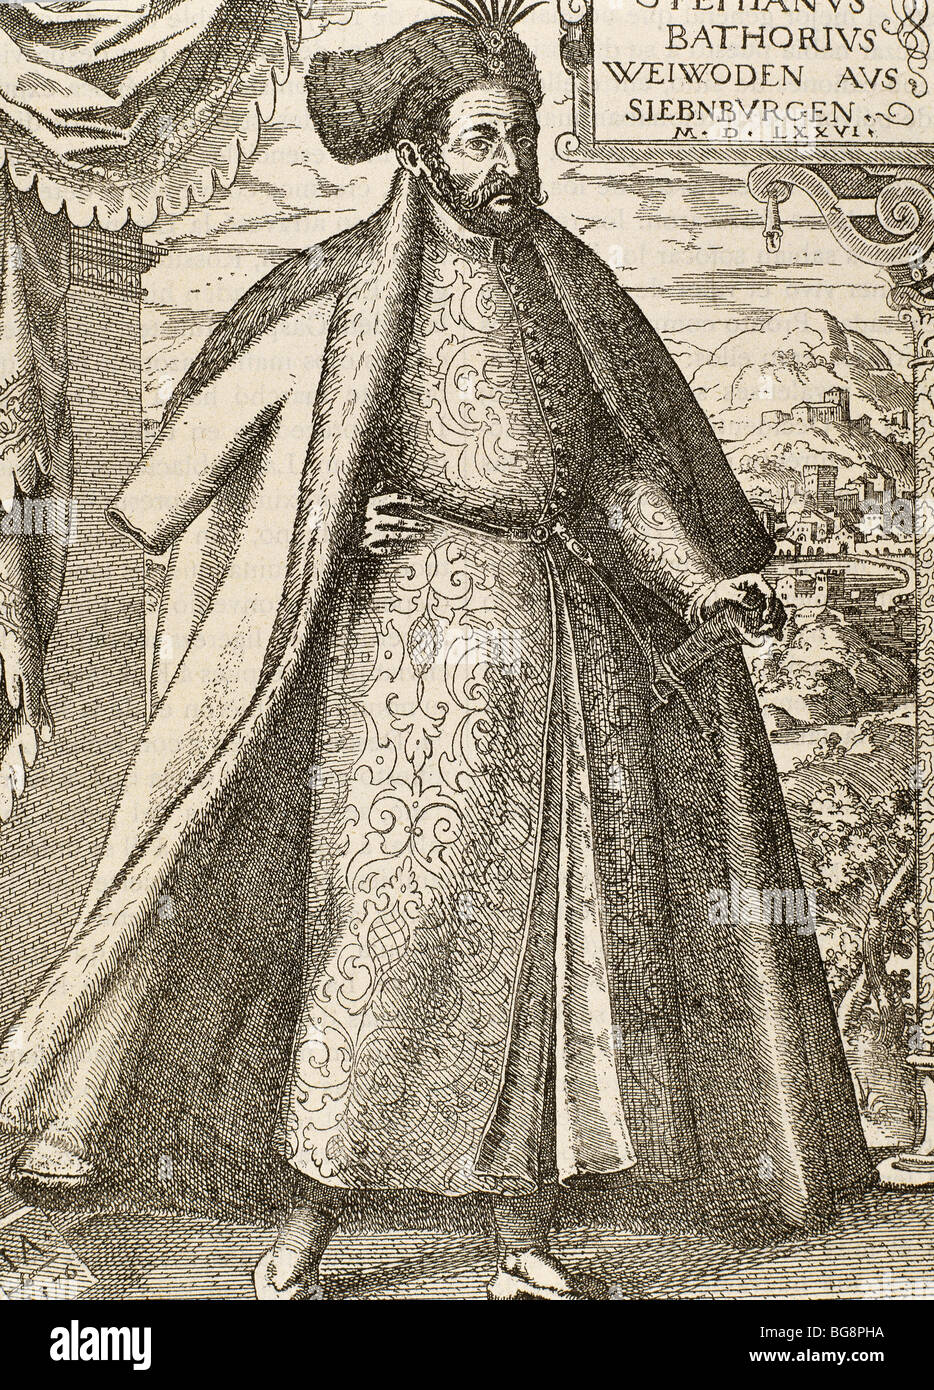 Bathory, Stephen ich (1533-1586). König von Polen (1575-1586). Gravur. Stockfoto